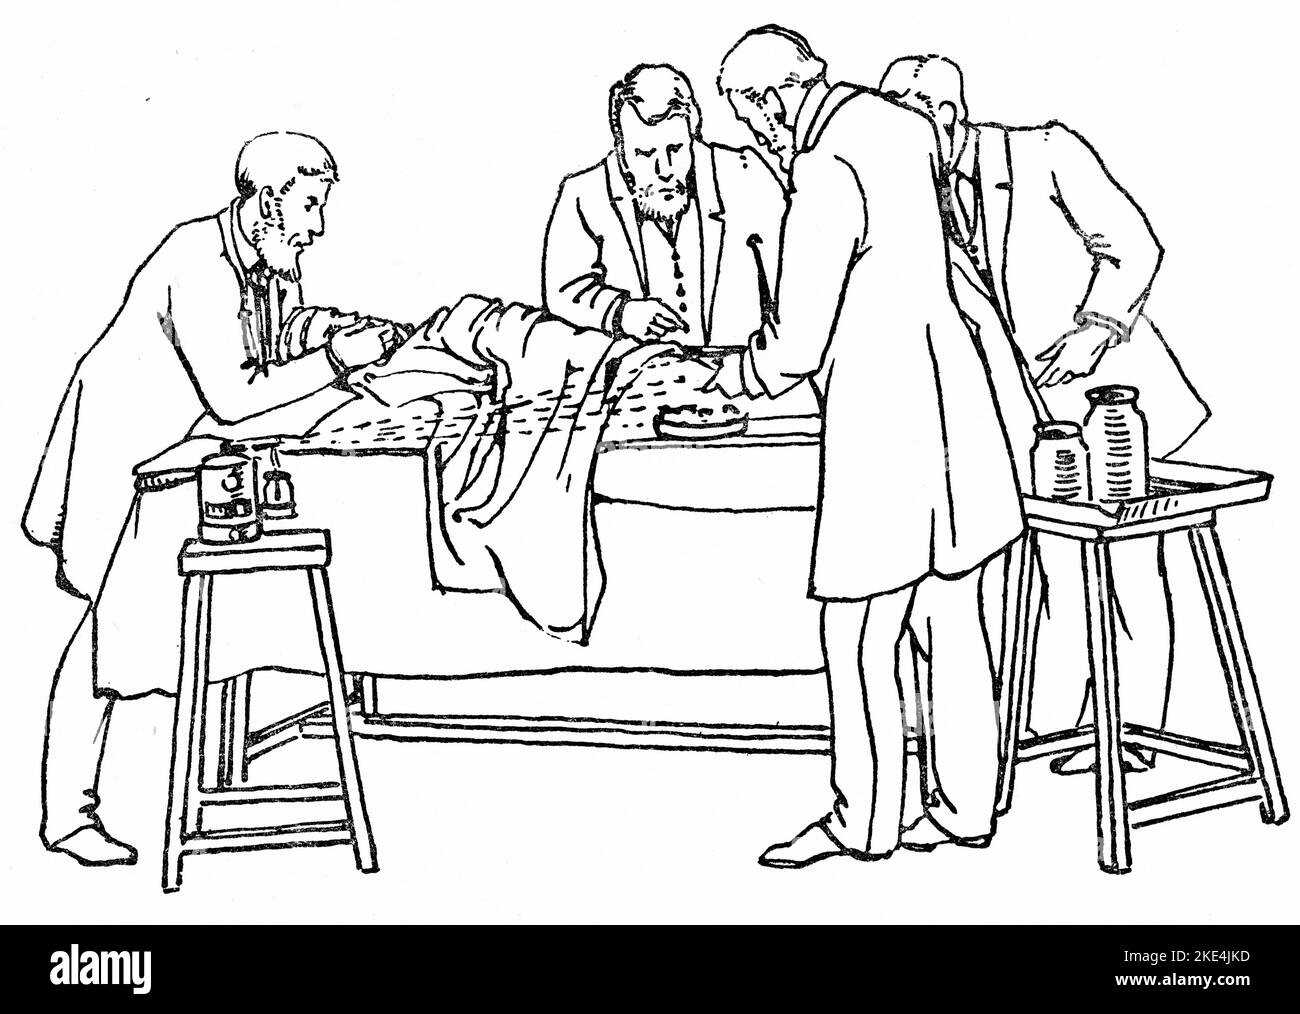 Funcionamiento del 1880 con el pulverizador de lister en uso. El aparato de rociado de vapor carbólico de Joseph Lister fue un gran avance en la cirugía antiséptica y se utilizó para rociar una solución de ácido carbólico del cinco por ciento en los quirófanos durante la cirugía. Joseph Lister (1827-1912) fue un cirujano británico, científico médico, patólogo experimental y pionero de la cirugía antiséptica y la medicina preventiva. De 'Cirugía antiséptica: Sus principios, práctica, historia y resultados' por William Watson Cheyne (1852-1932). Foto de stock